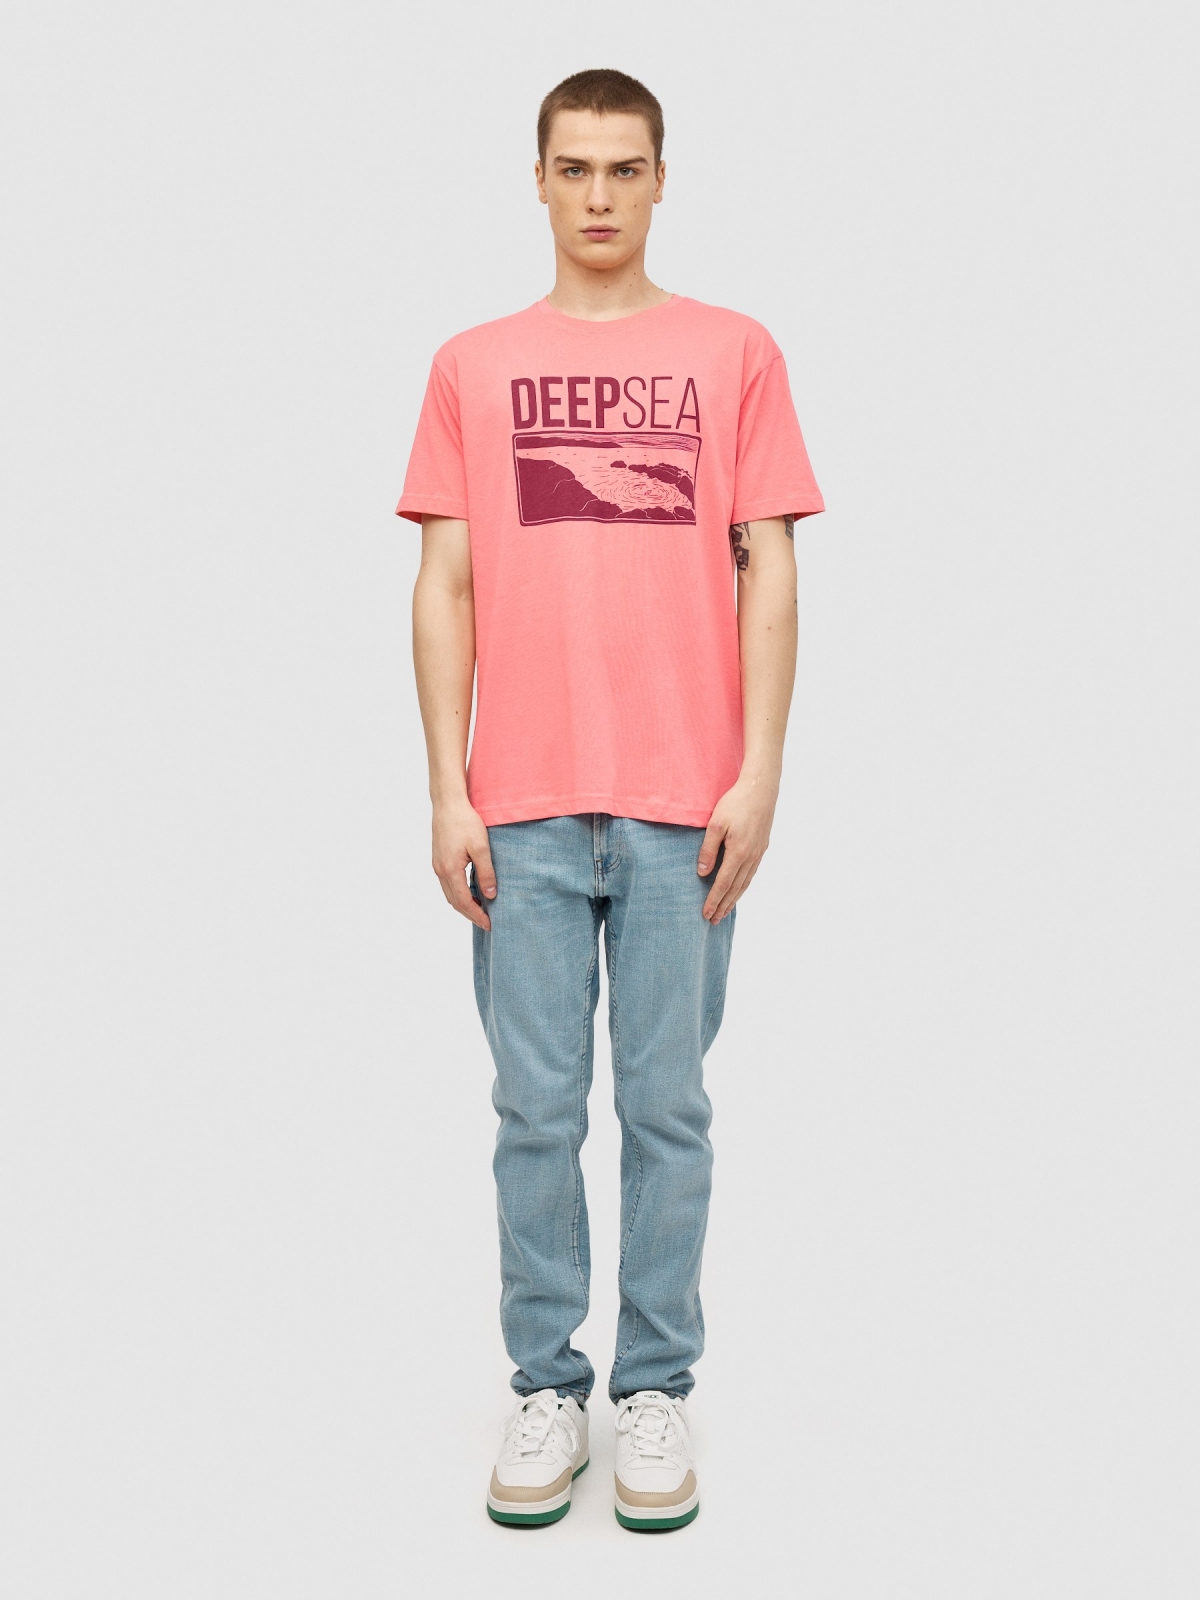 T-shirt Deep Sea rosa vista geral frontal